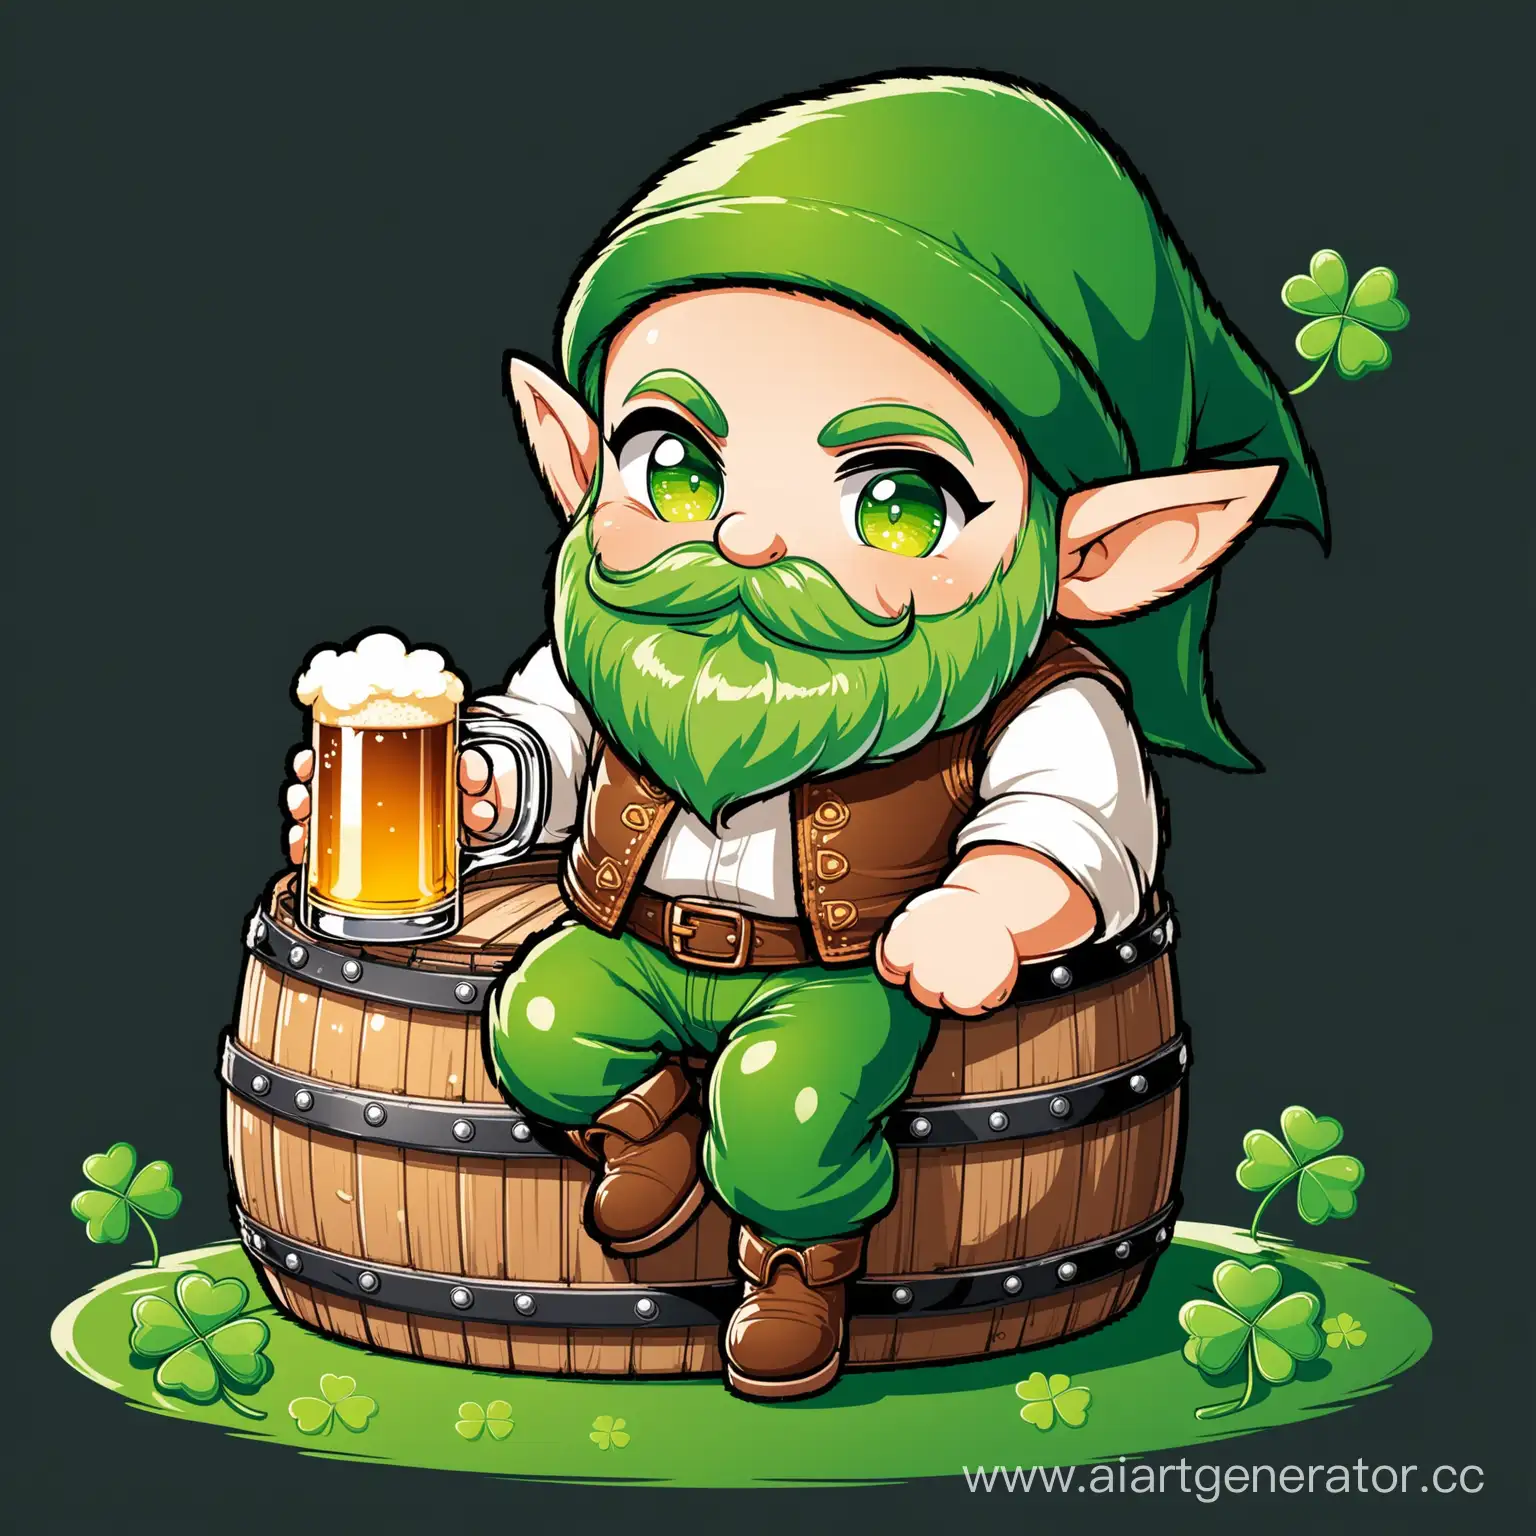 Cheerful-Chibi-Elf-Enjoying-a-Barrel-of-Beer-on-a-Clover-Leaf